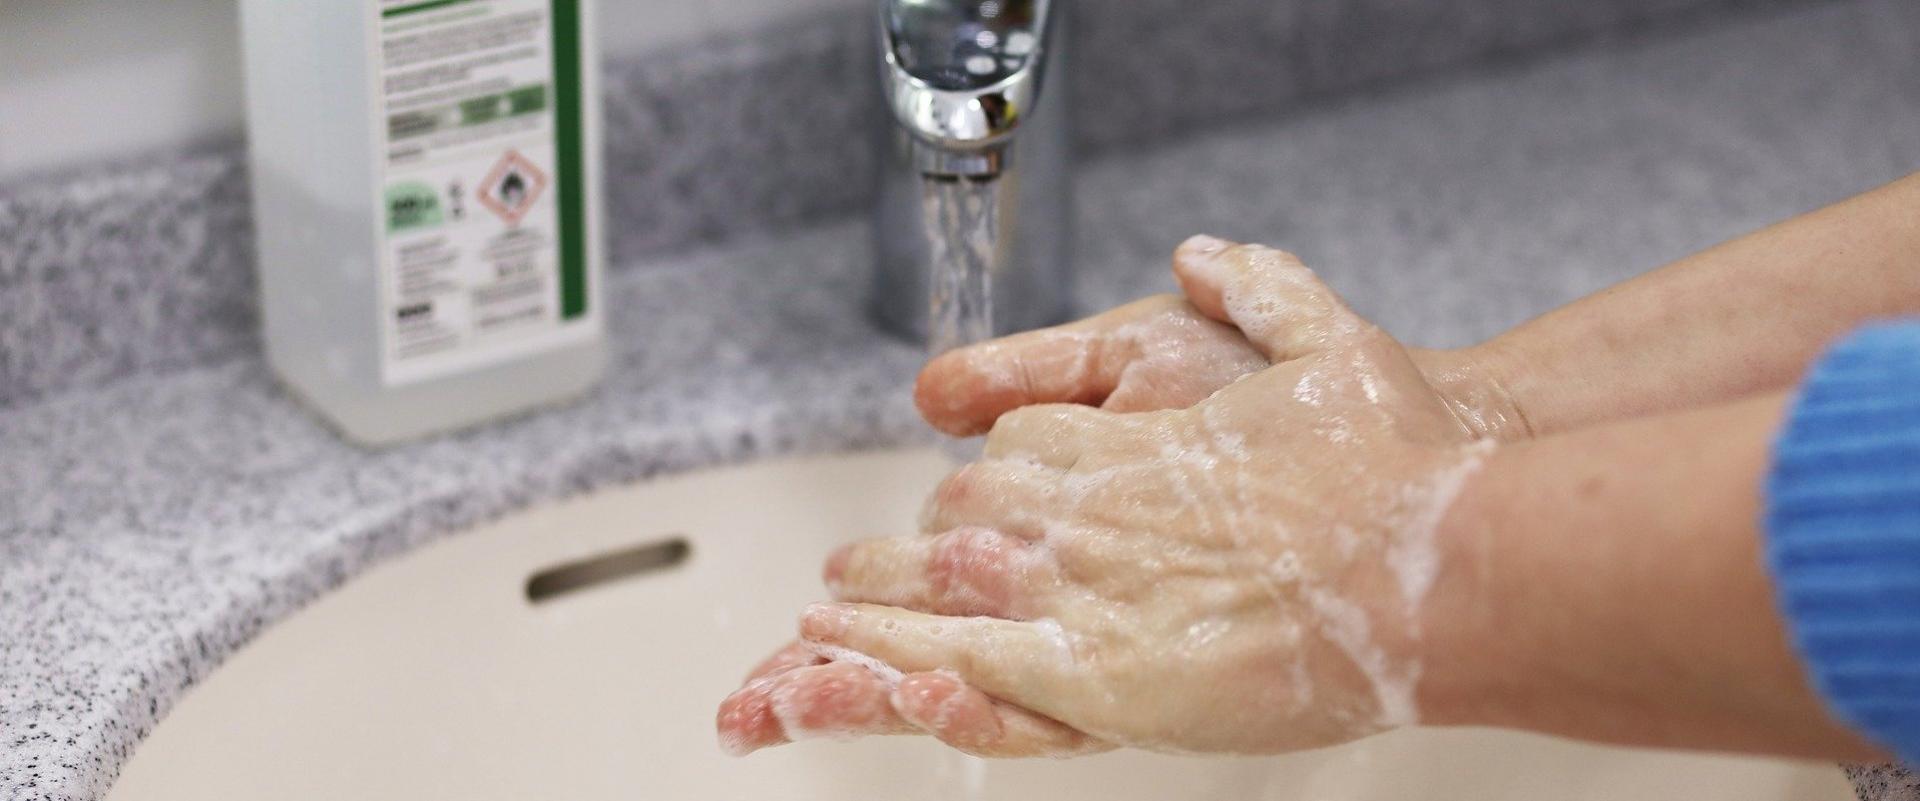 Jak skutecznie myć dłonie?